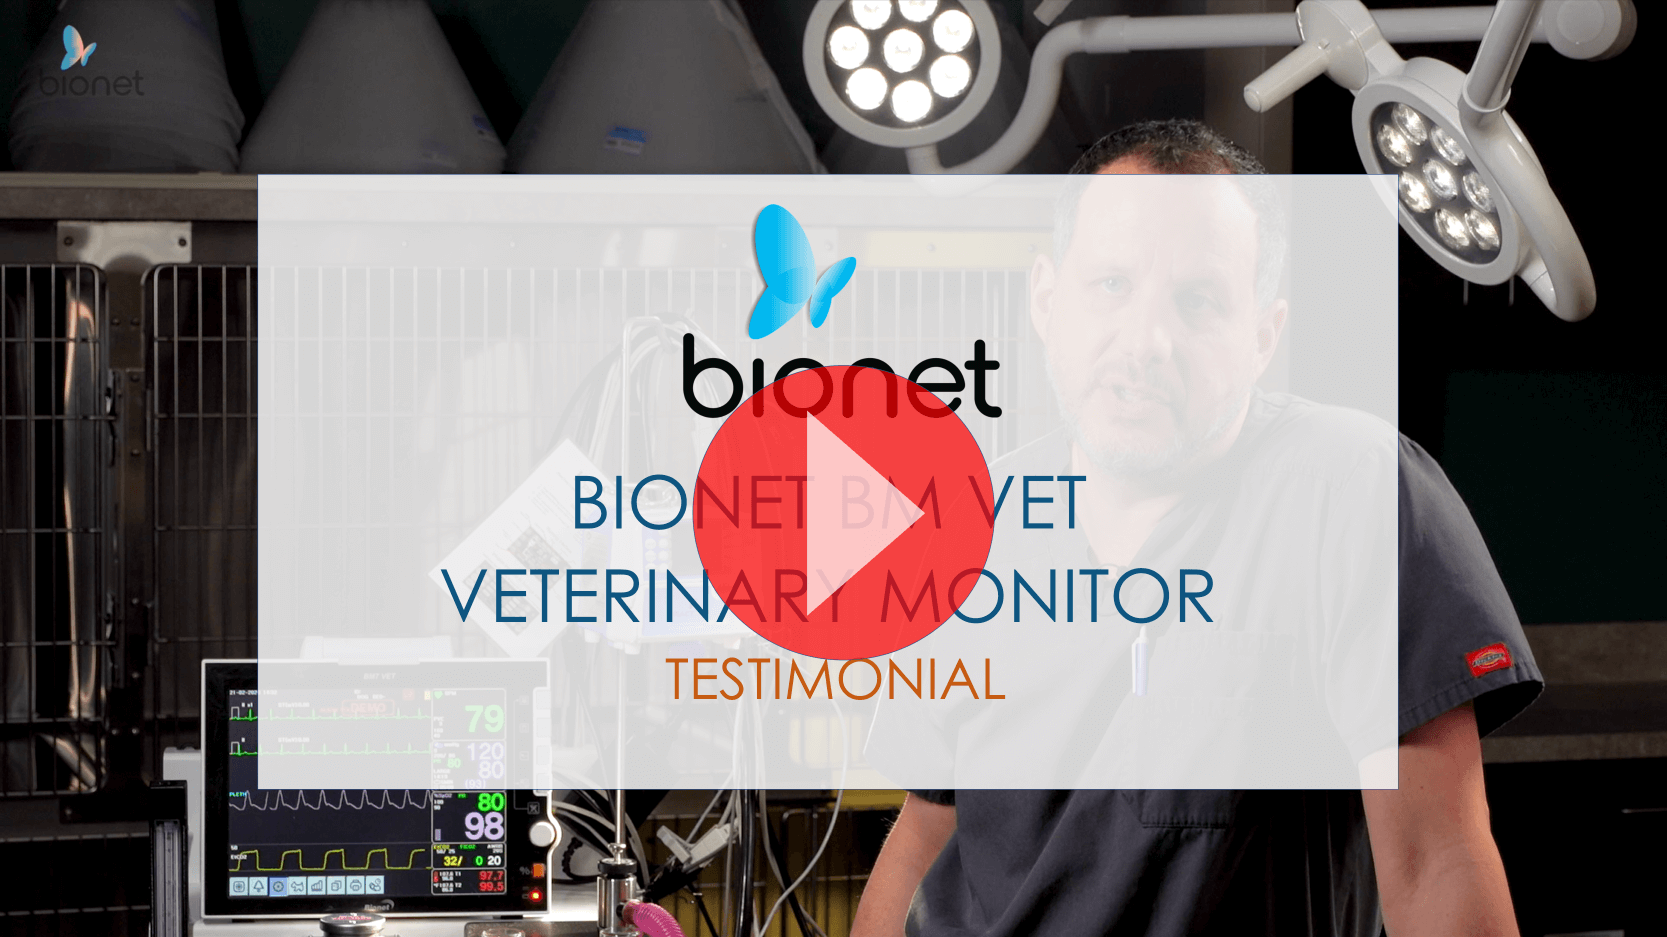 3-2.BIONET BM VET Veterinary Monitor Testimonial